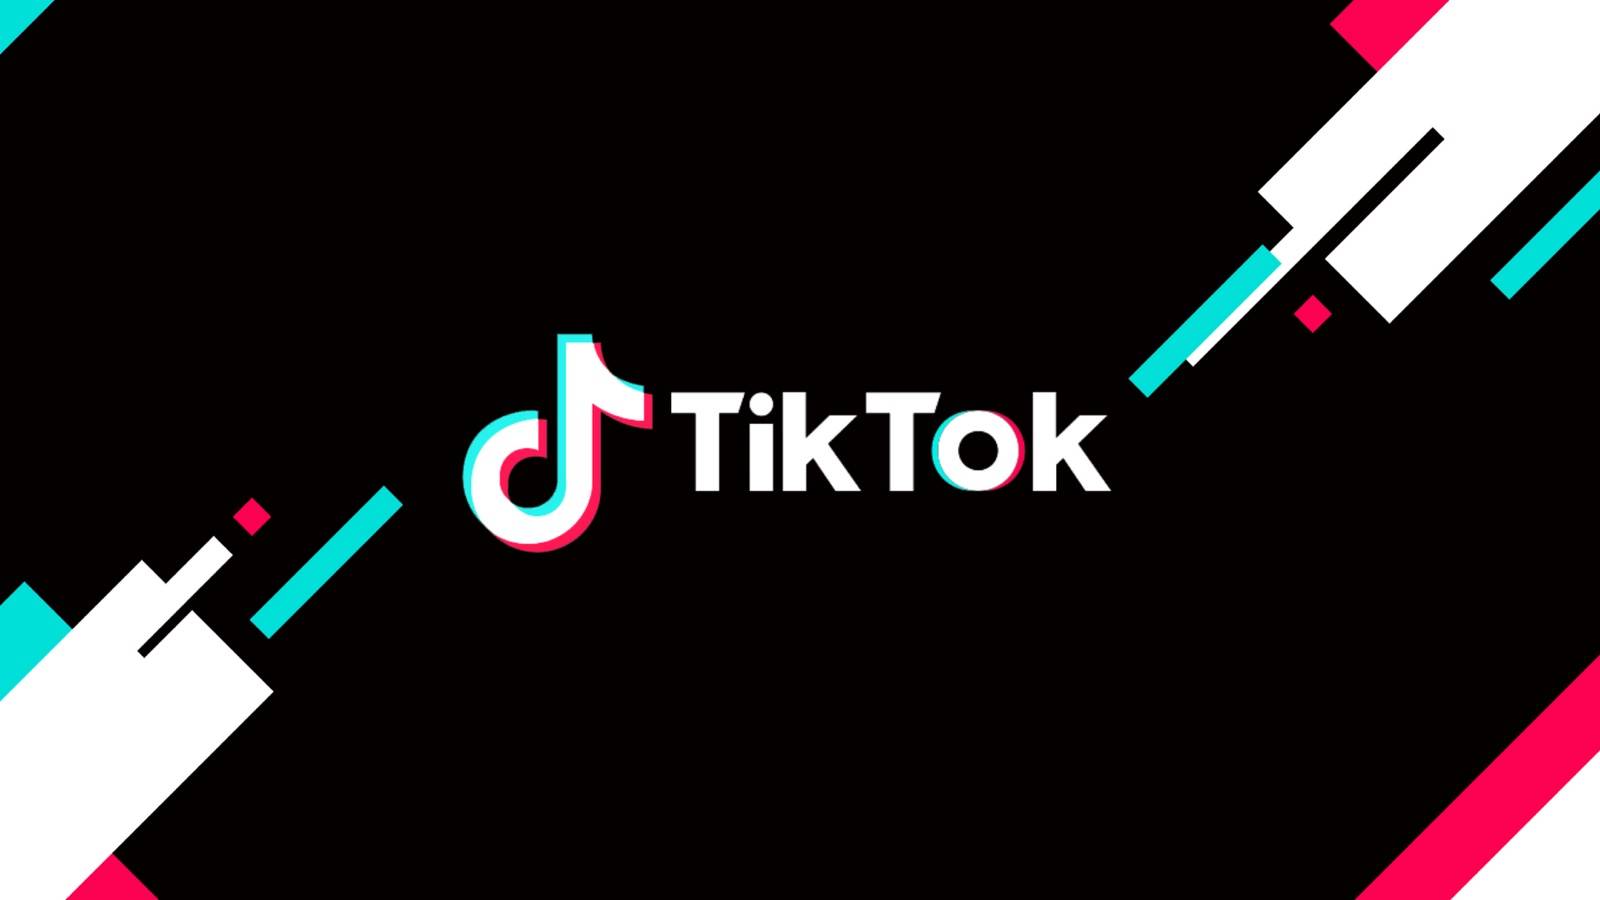 TikTok Update a fost Lansat, ce Modificari sunt Oferite in Telefoane